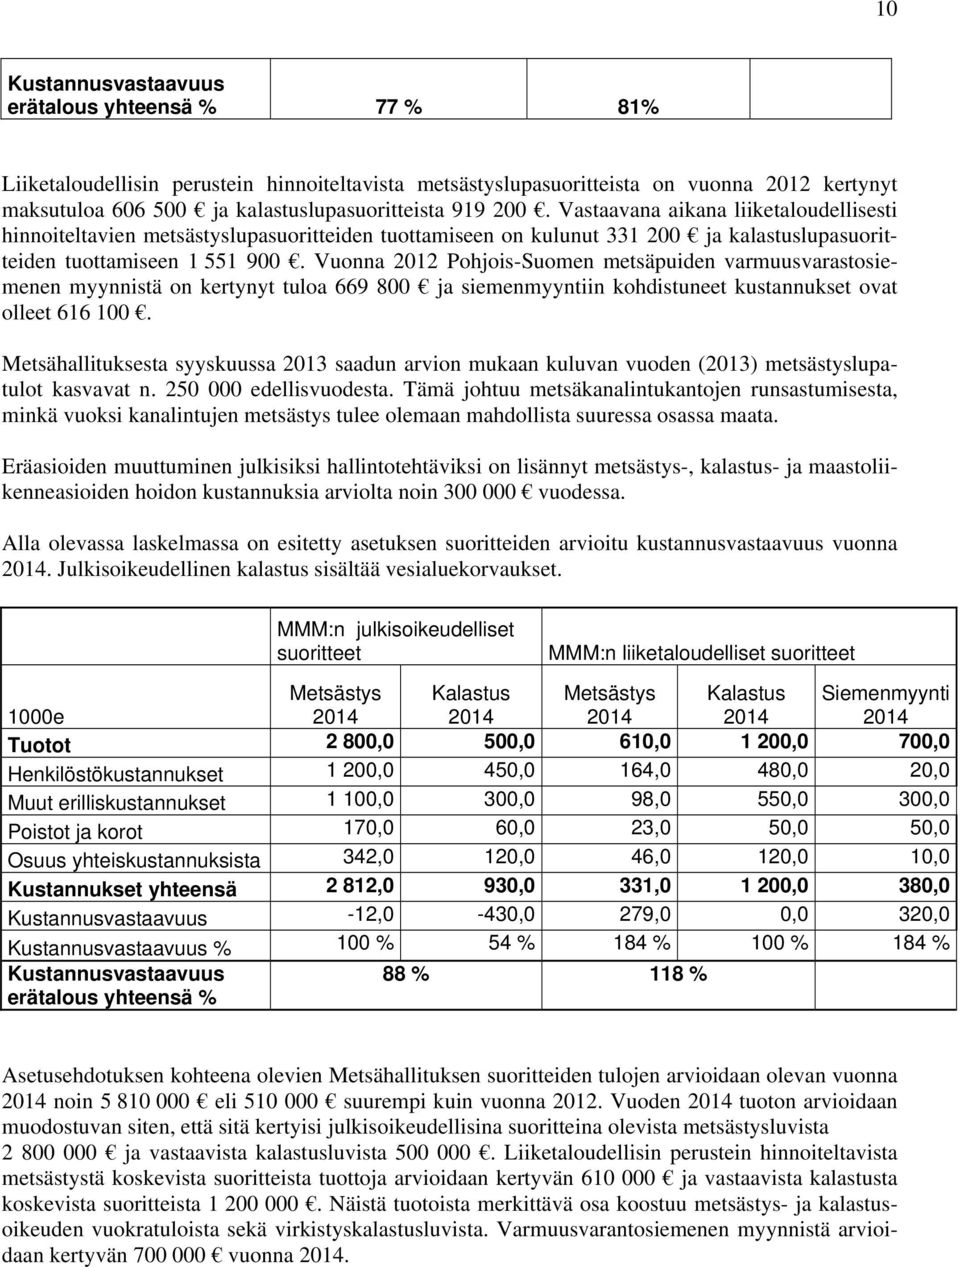 Vuonna 2012 Pohjois-Suomen metsäpuiden varmuusvarastosiemenen myynnistä on kertynyt tuloa 669 800 ja siemenmyyntiin kohdistuneet kustannukset ovat olleet 616 100.